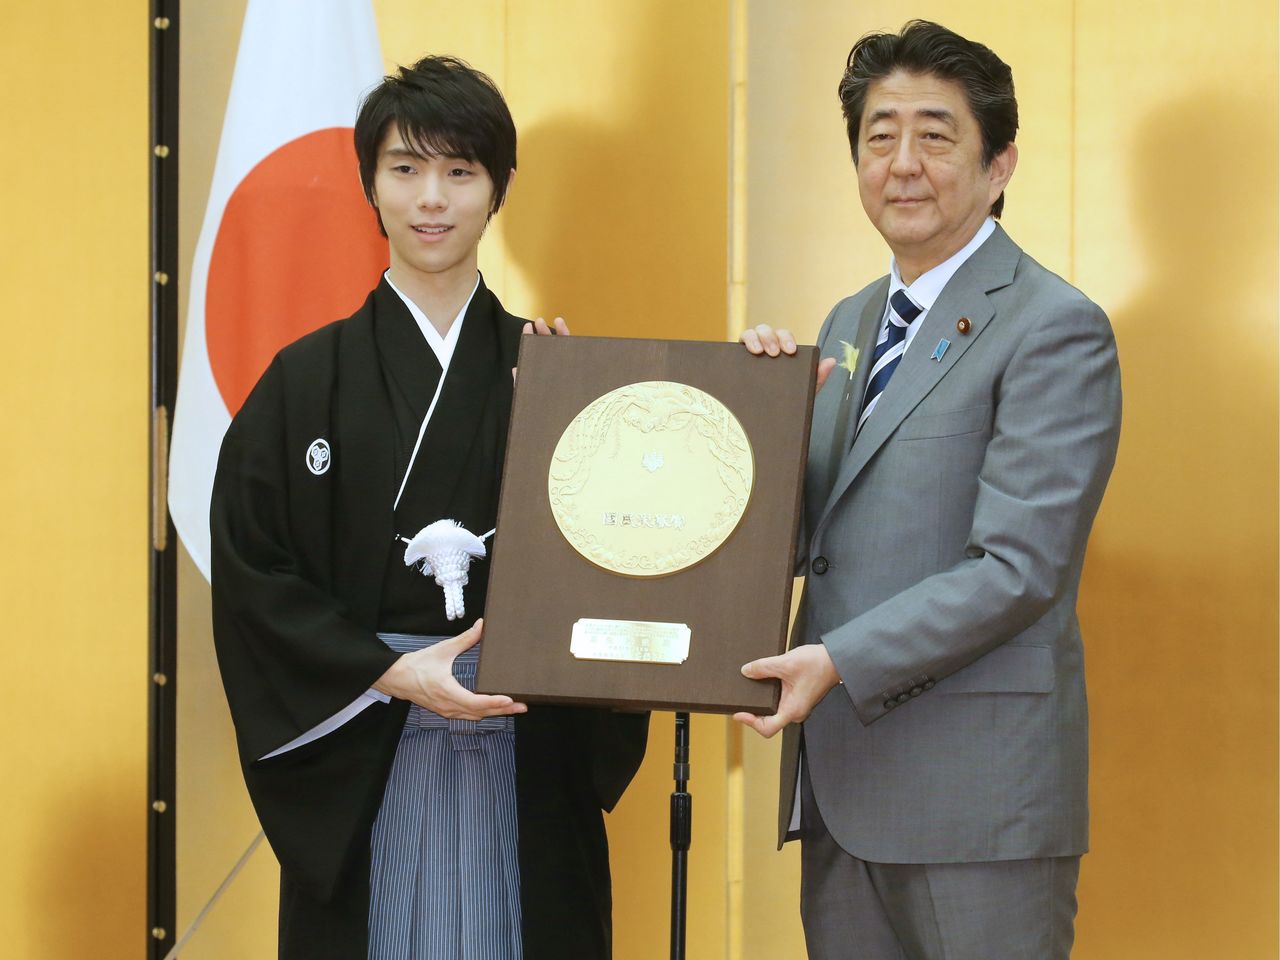 2 июля 2018 года Ханю Юдзуру (слева) получил Премию Народного Почёта из рук премьер-министра Абэ Синдзо за завоевание нескольких золотых медалей подряд на зимних Олимпийских играх (© Jiji)